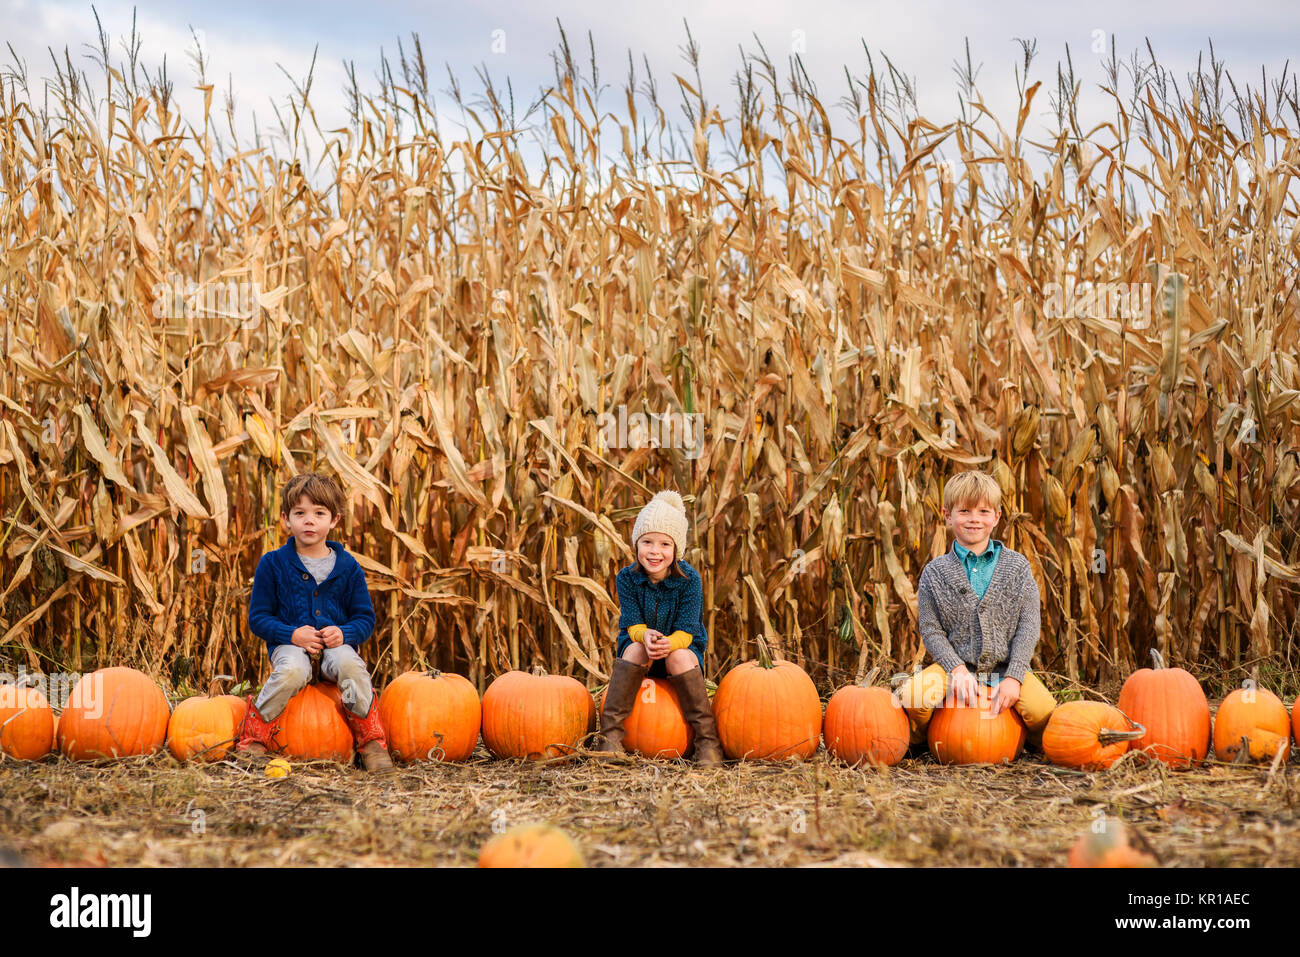 Three children sitting on pumpkins in a pumpkin patch Stock Photo